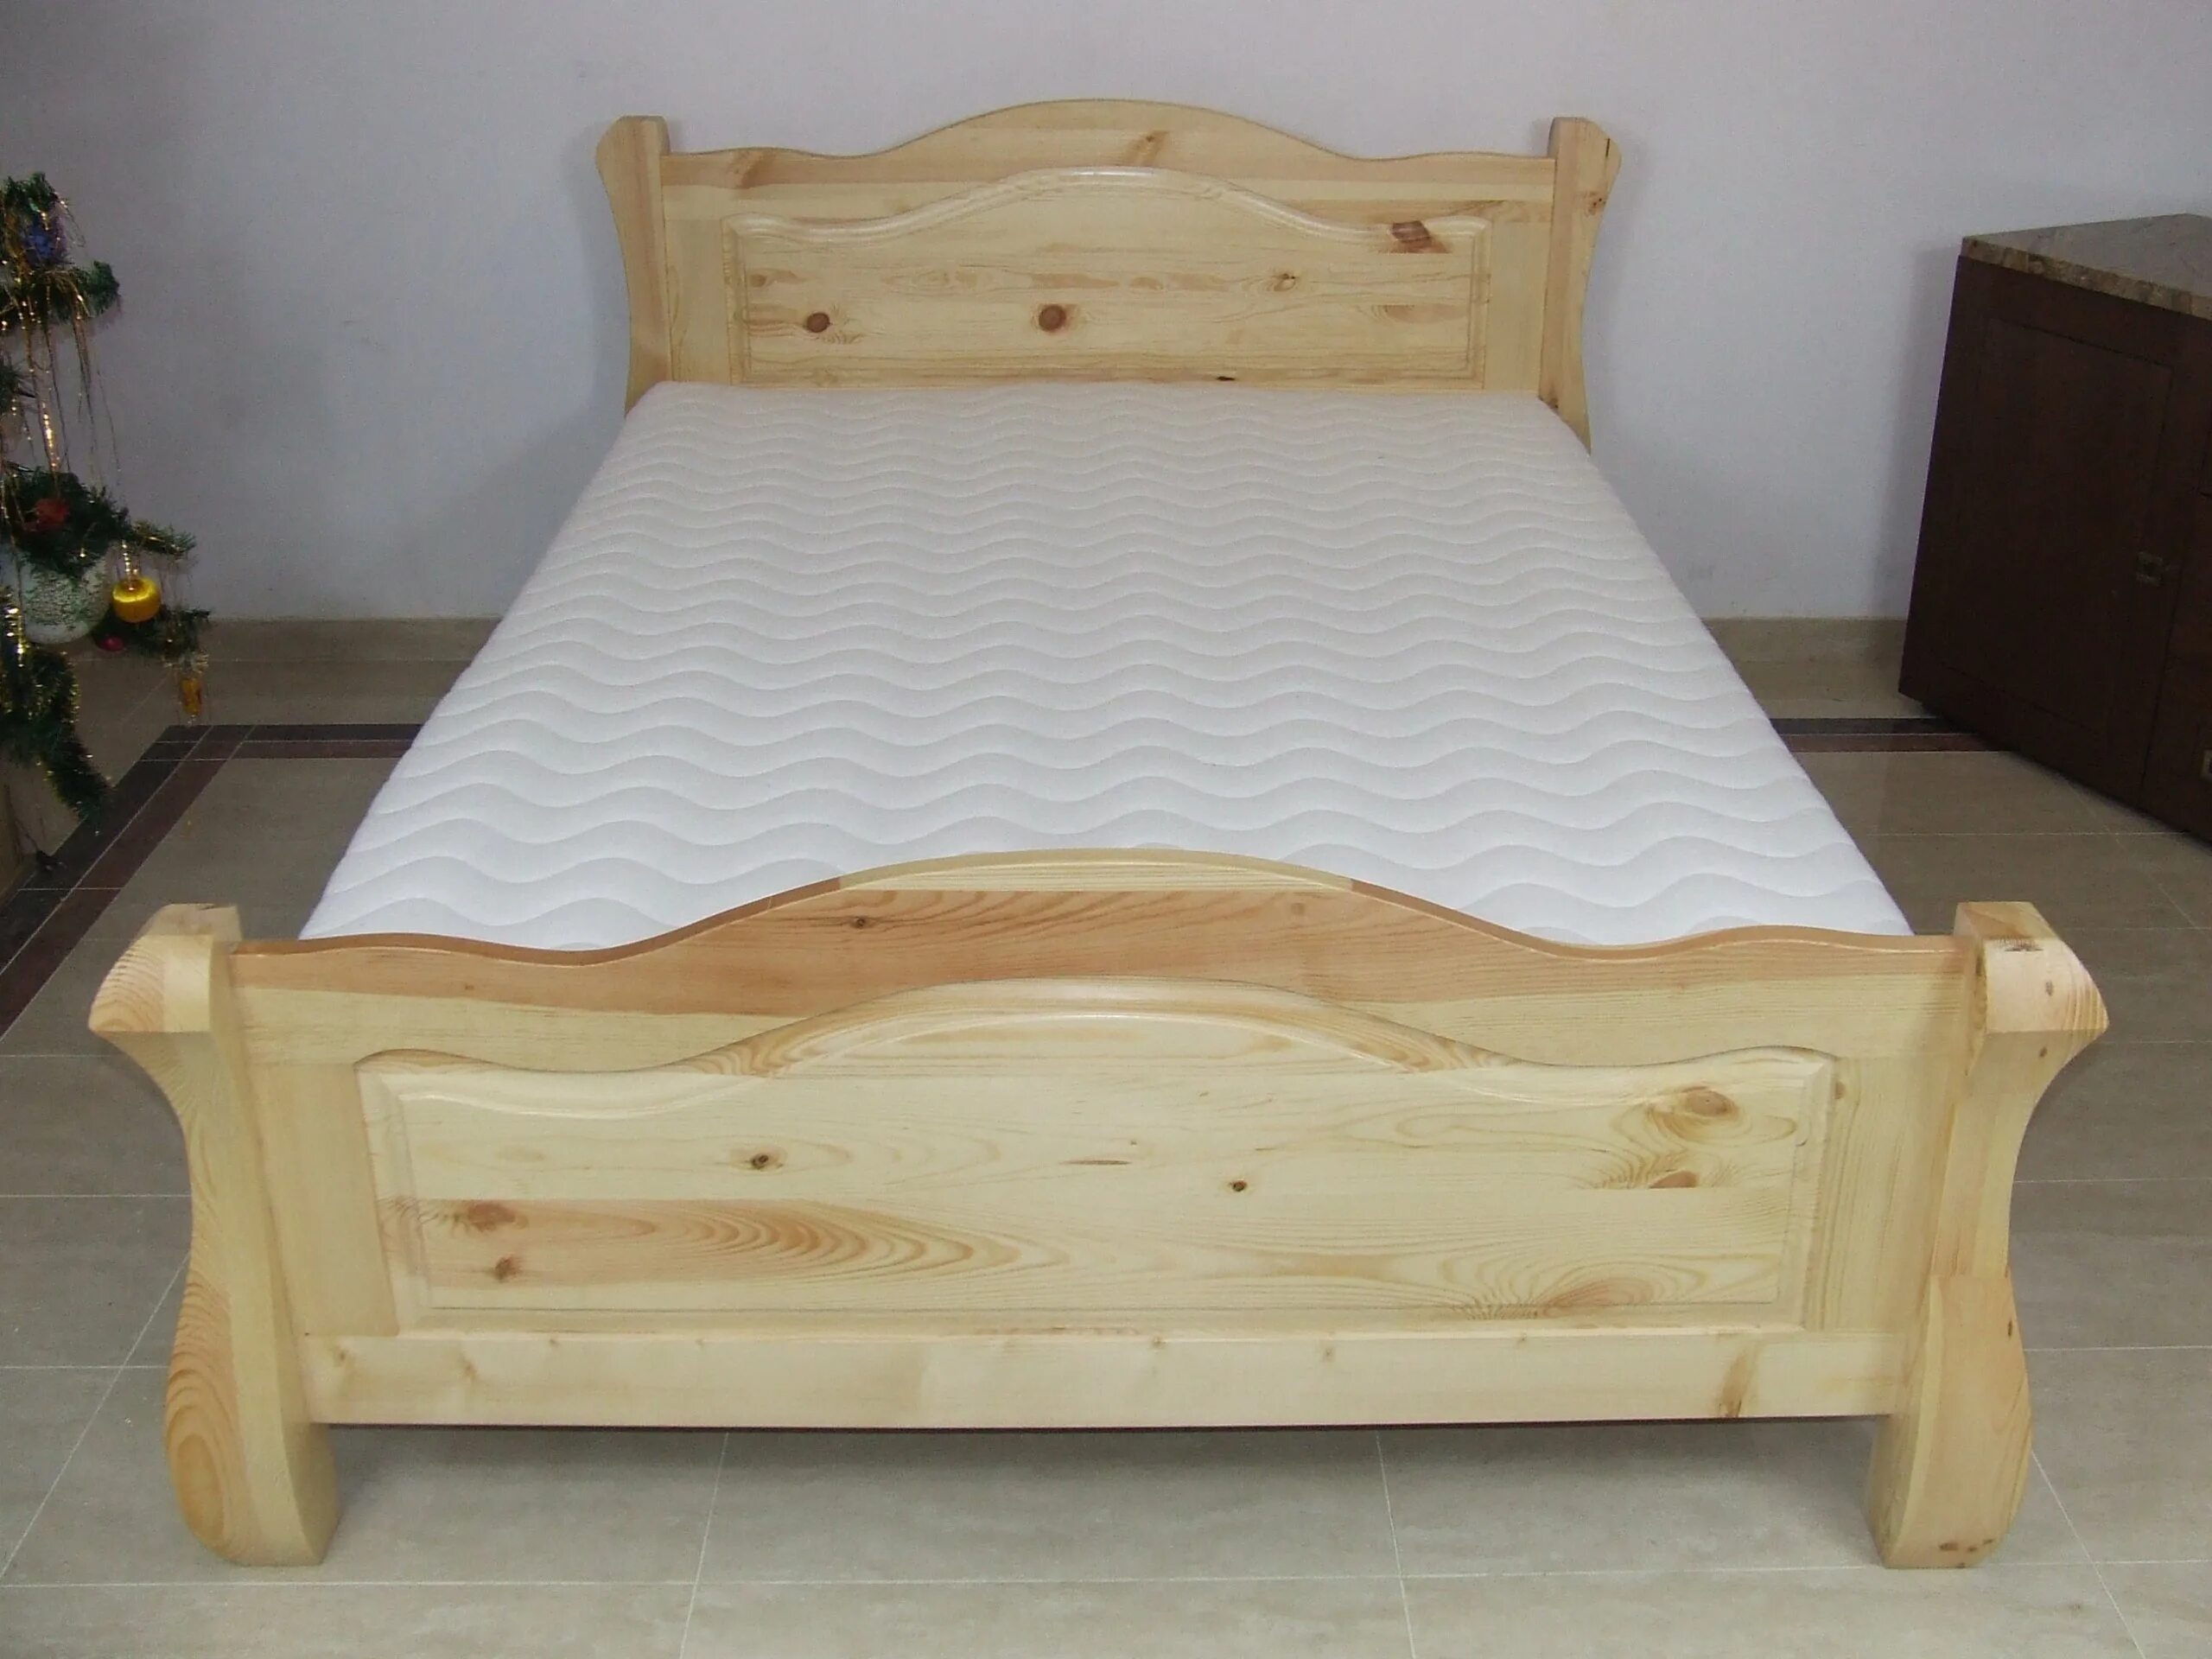 Купить деревянную кровать недорого. Кровать Фельсе сосна 160×200. Кровать массив сосны 160х200. Мебель через вайлдберриз кровать 160 на 200 из массива сосны.